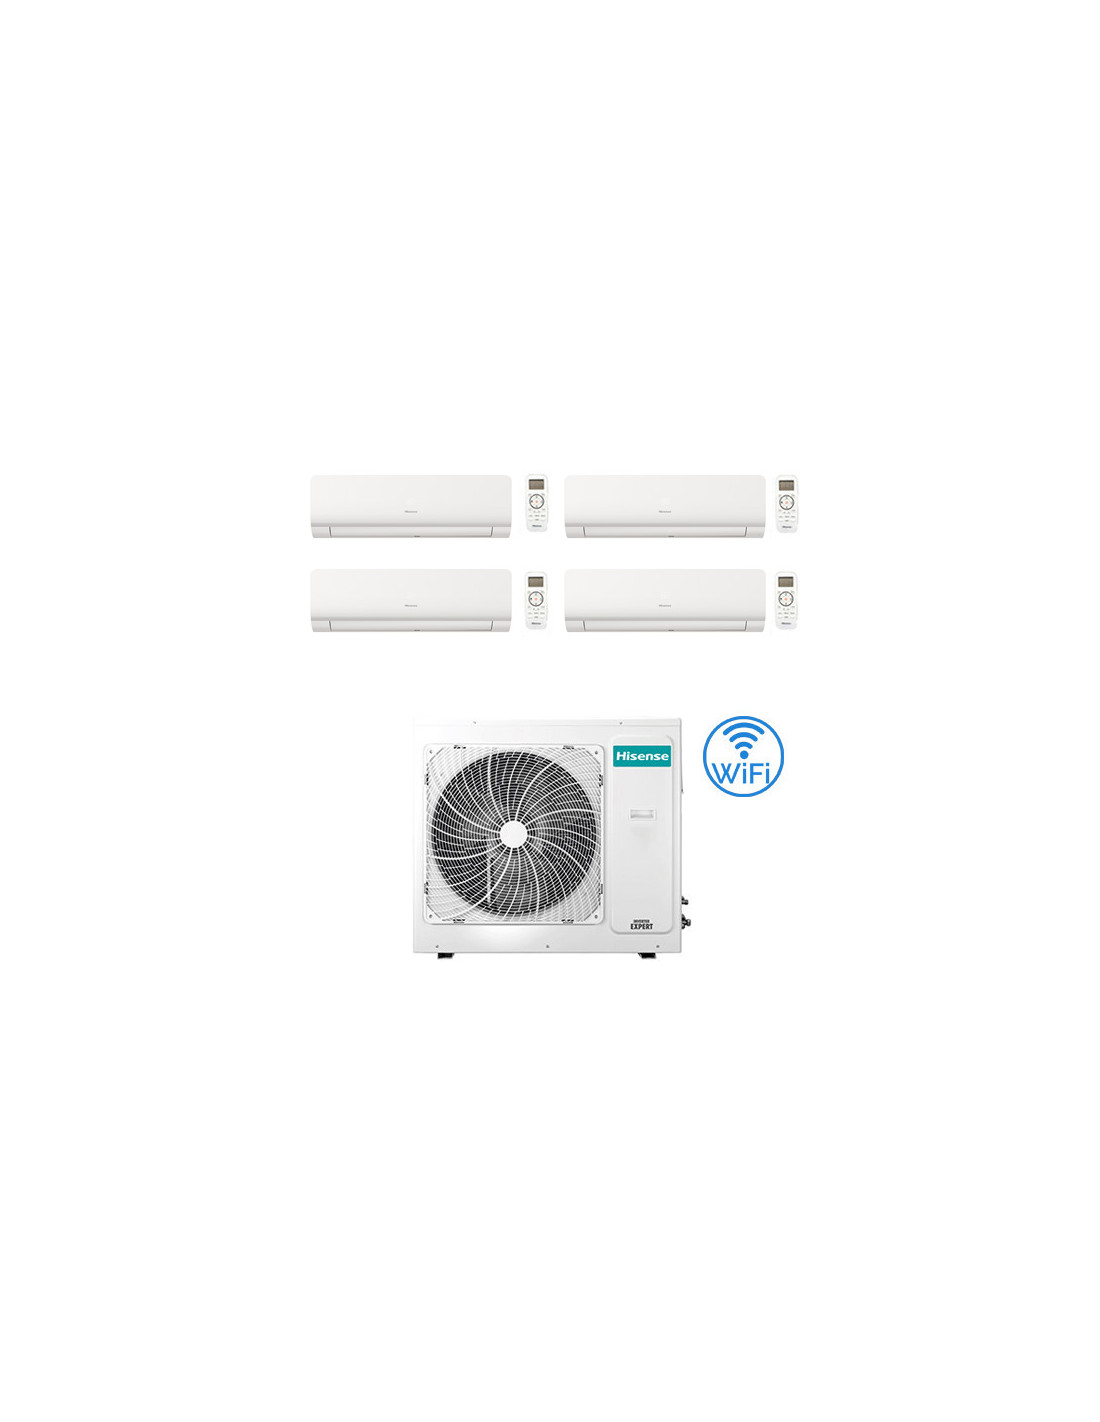 Climatizzatore Condizionatore Inverter Hisense New Energy Wifi R32 Quadri Split 7000 7000 1271